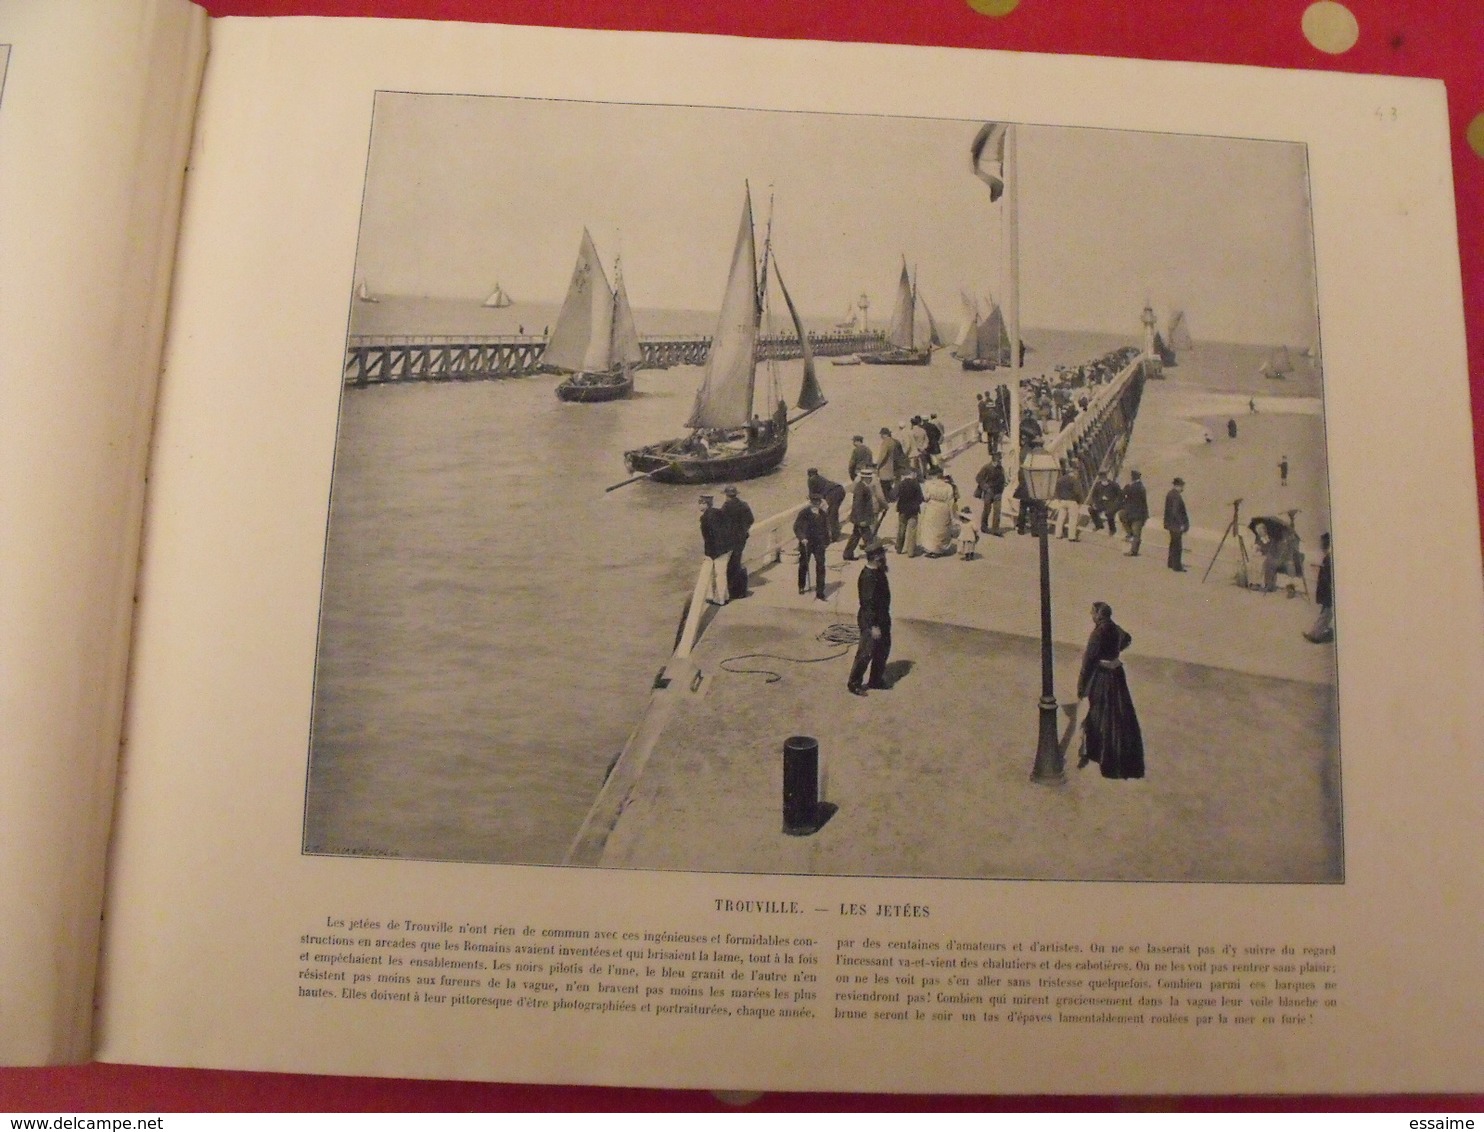 380 photographies. le Panorama. merveilles de la France, Belgique, Suisse, Algérie, Tunisie. Neurdein. 1895 Baschet